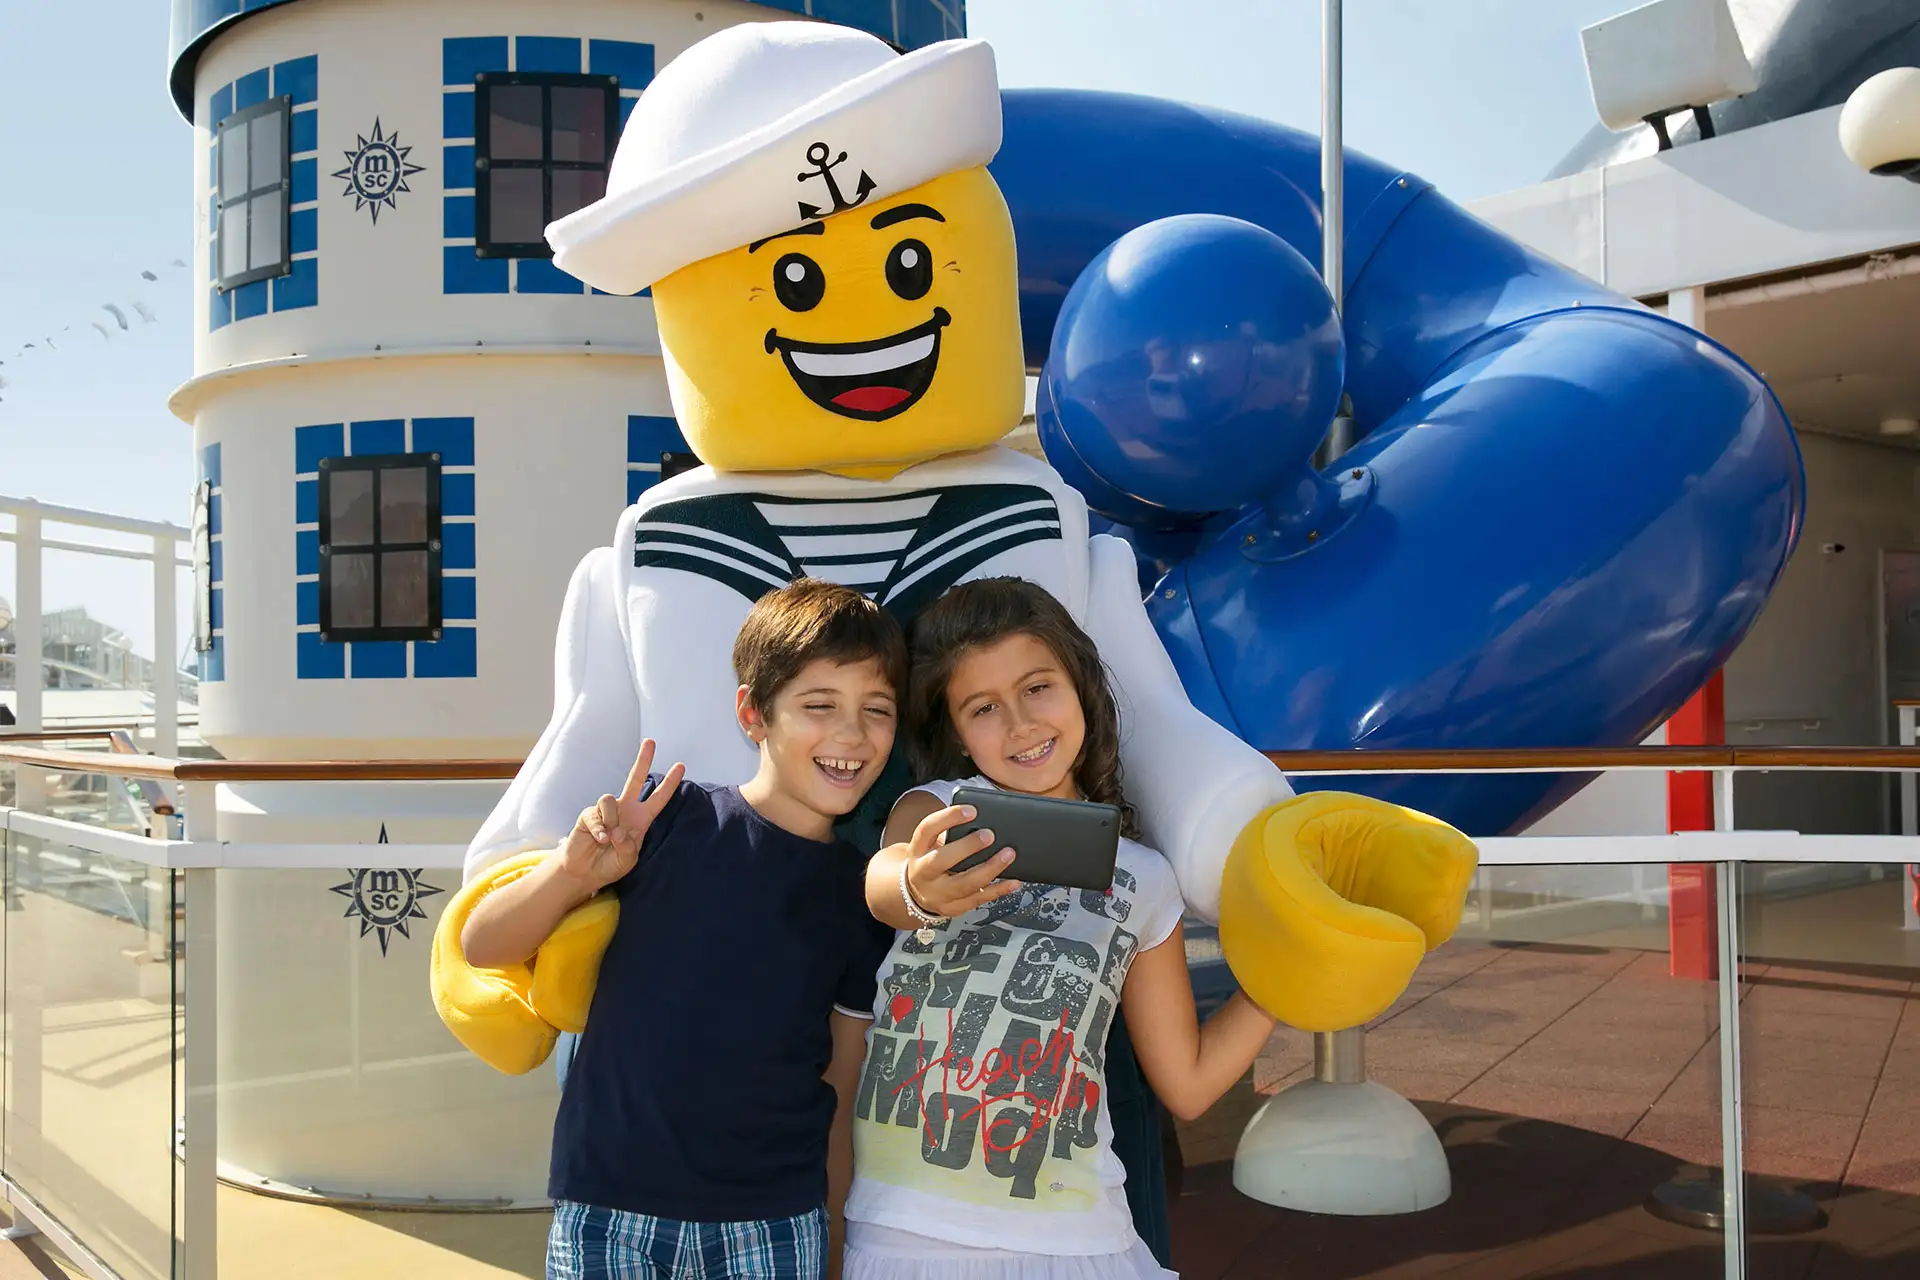 Kids on MSC Cruise; Courtesy of MSC Cruises